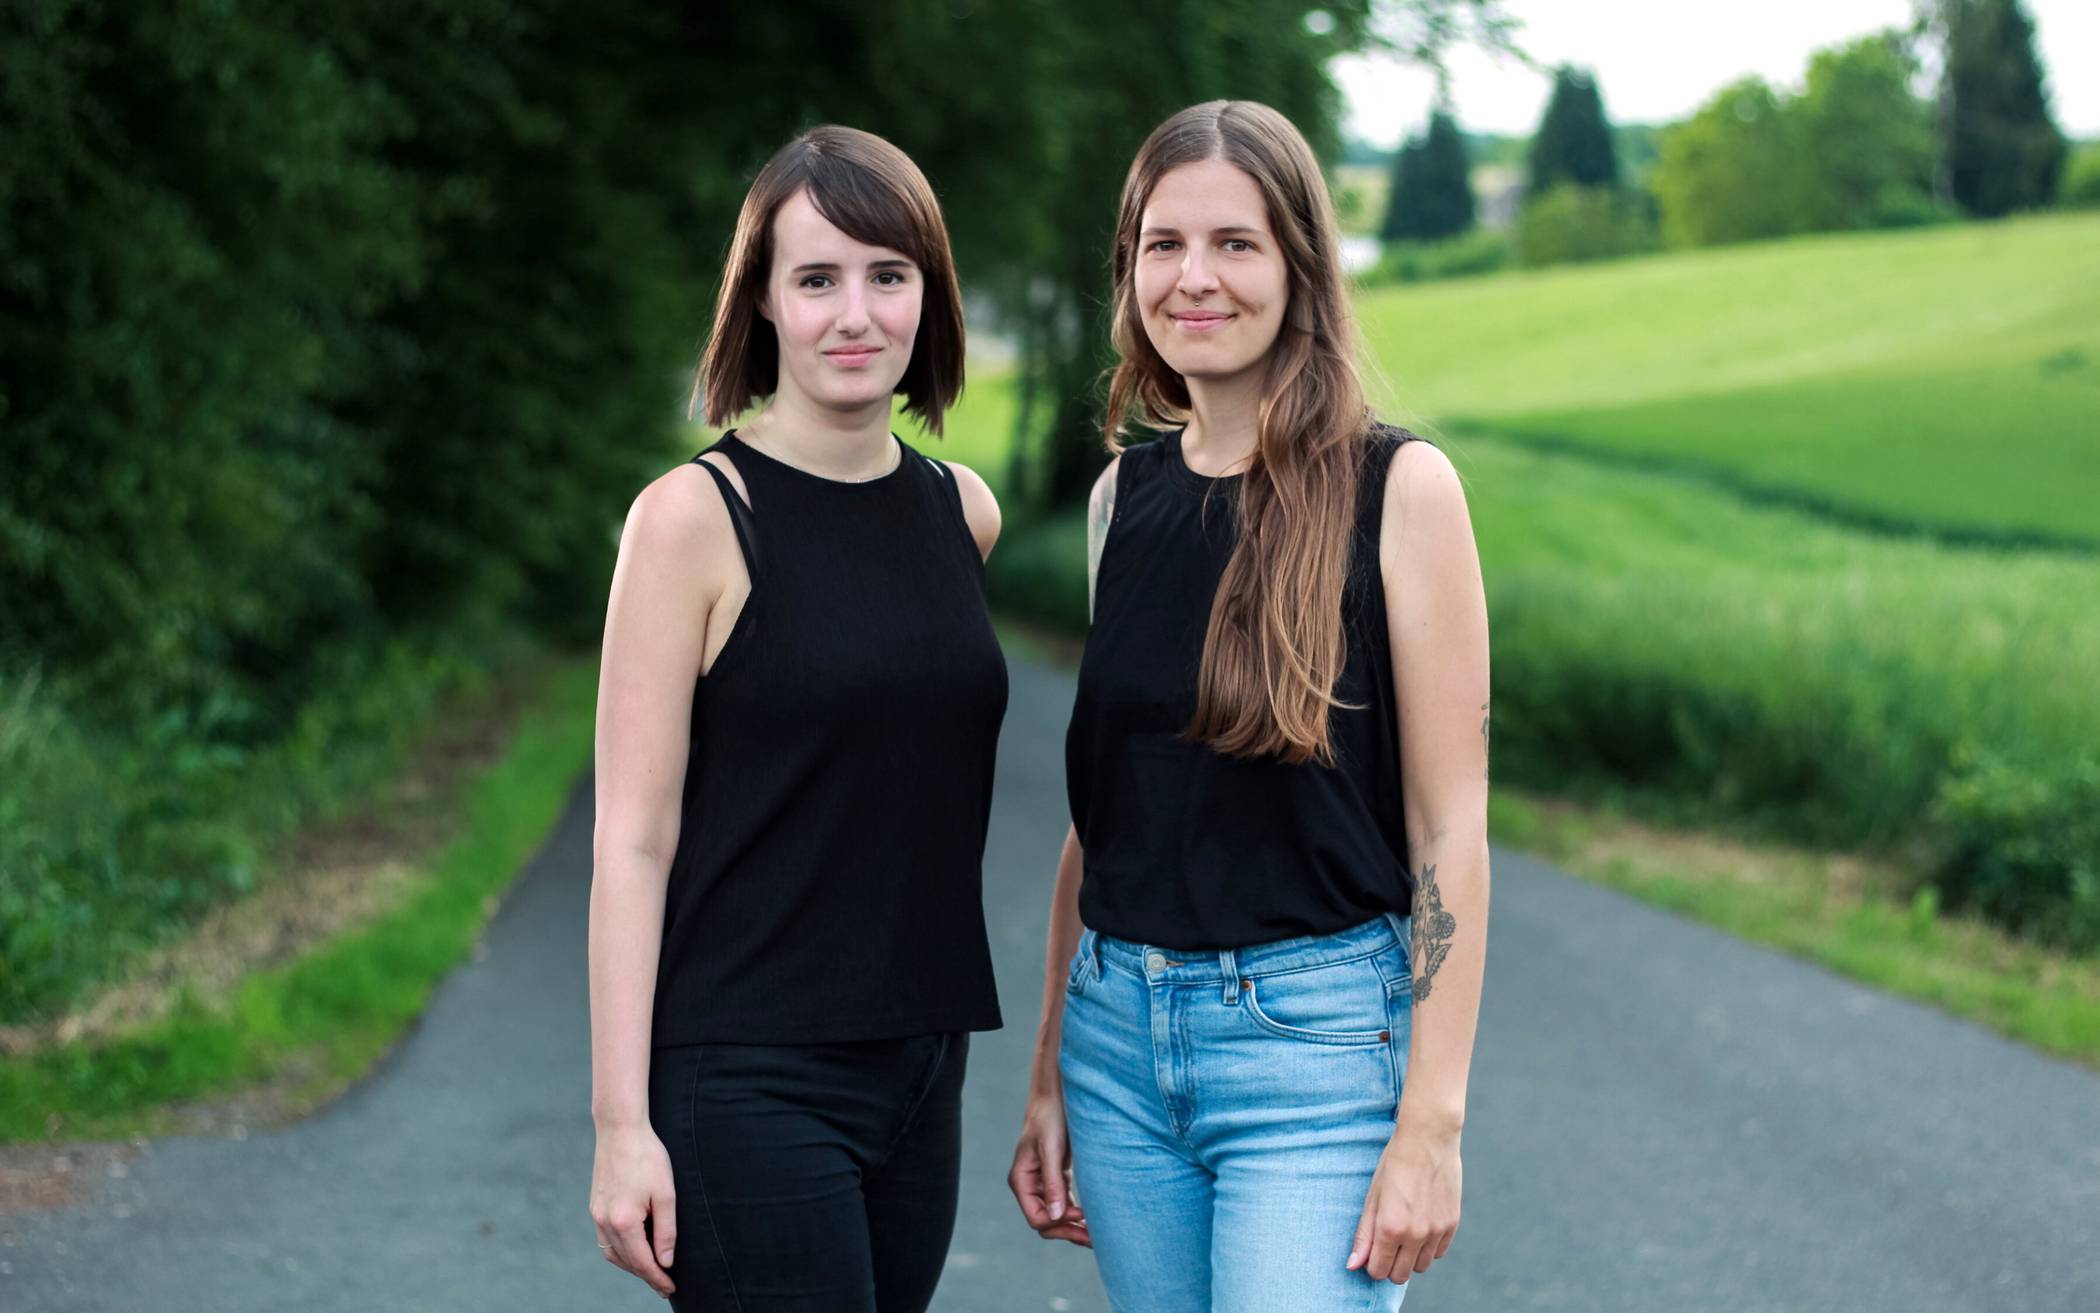  Diana Kaiser und Mareike Schlösser sind Absolventinnen der Fakultät Design und Kunst, Abteilung Mediendesign und Raumgestaltung an der Bergischen Universität. 